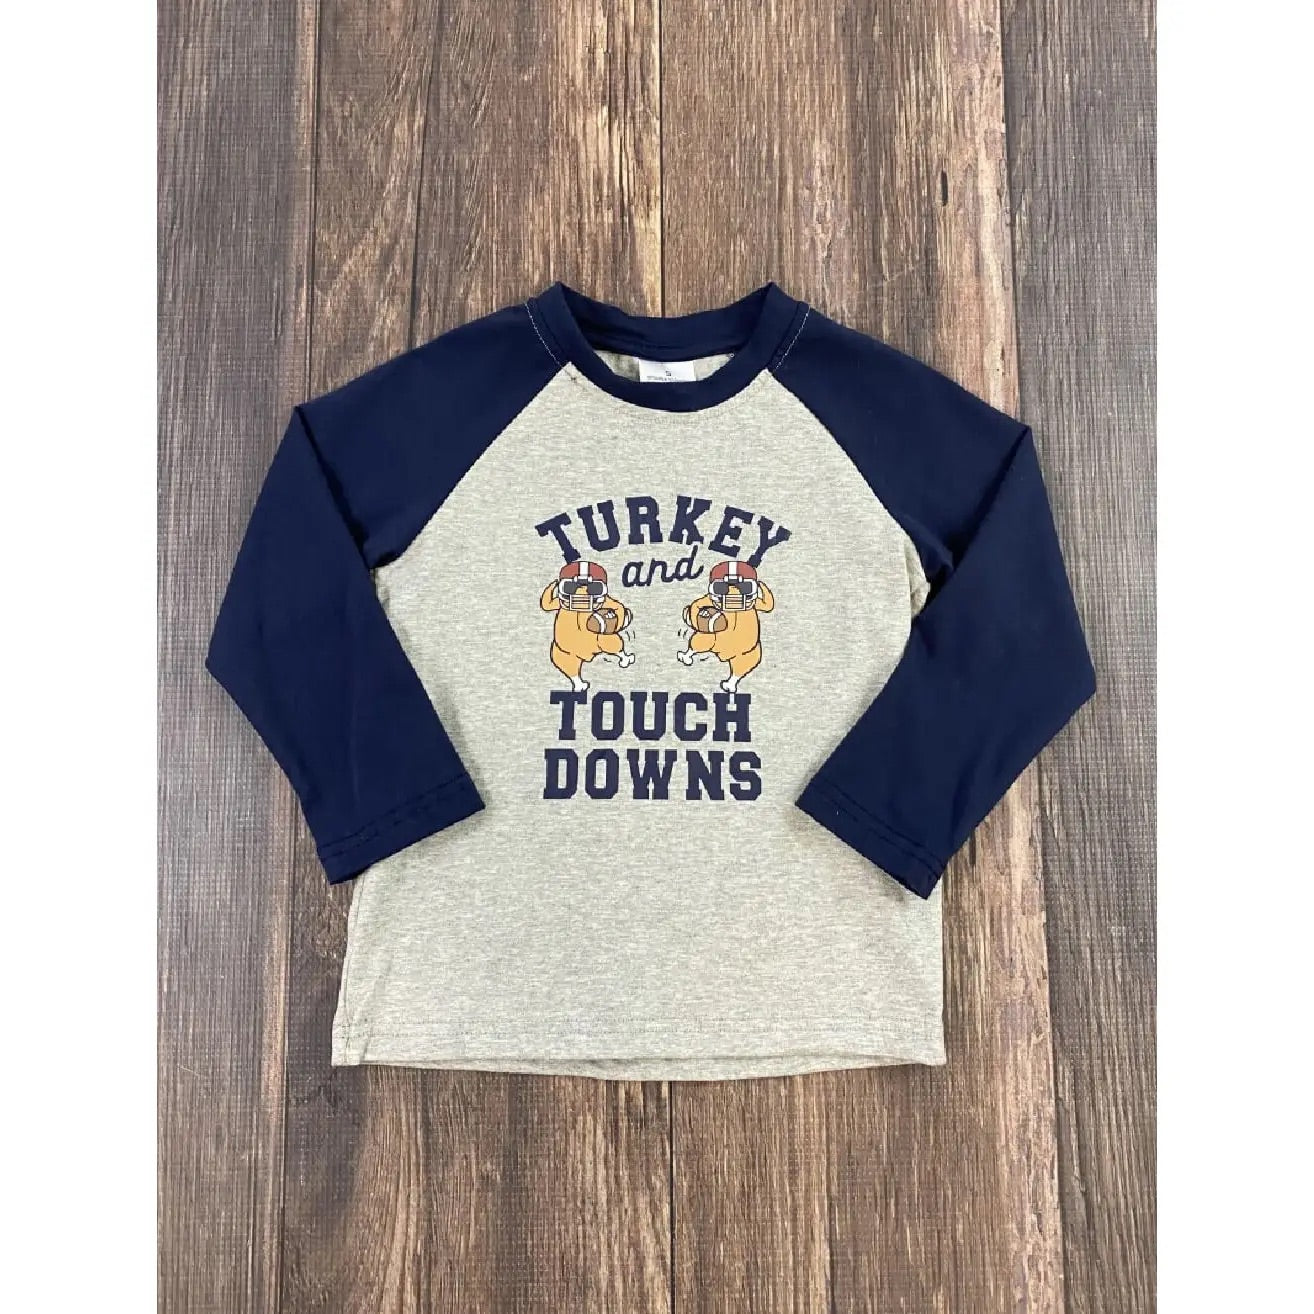 Kids Turkey & Touchdowns tee